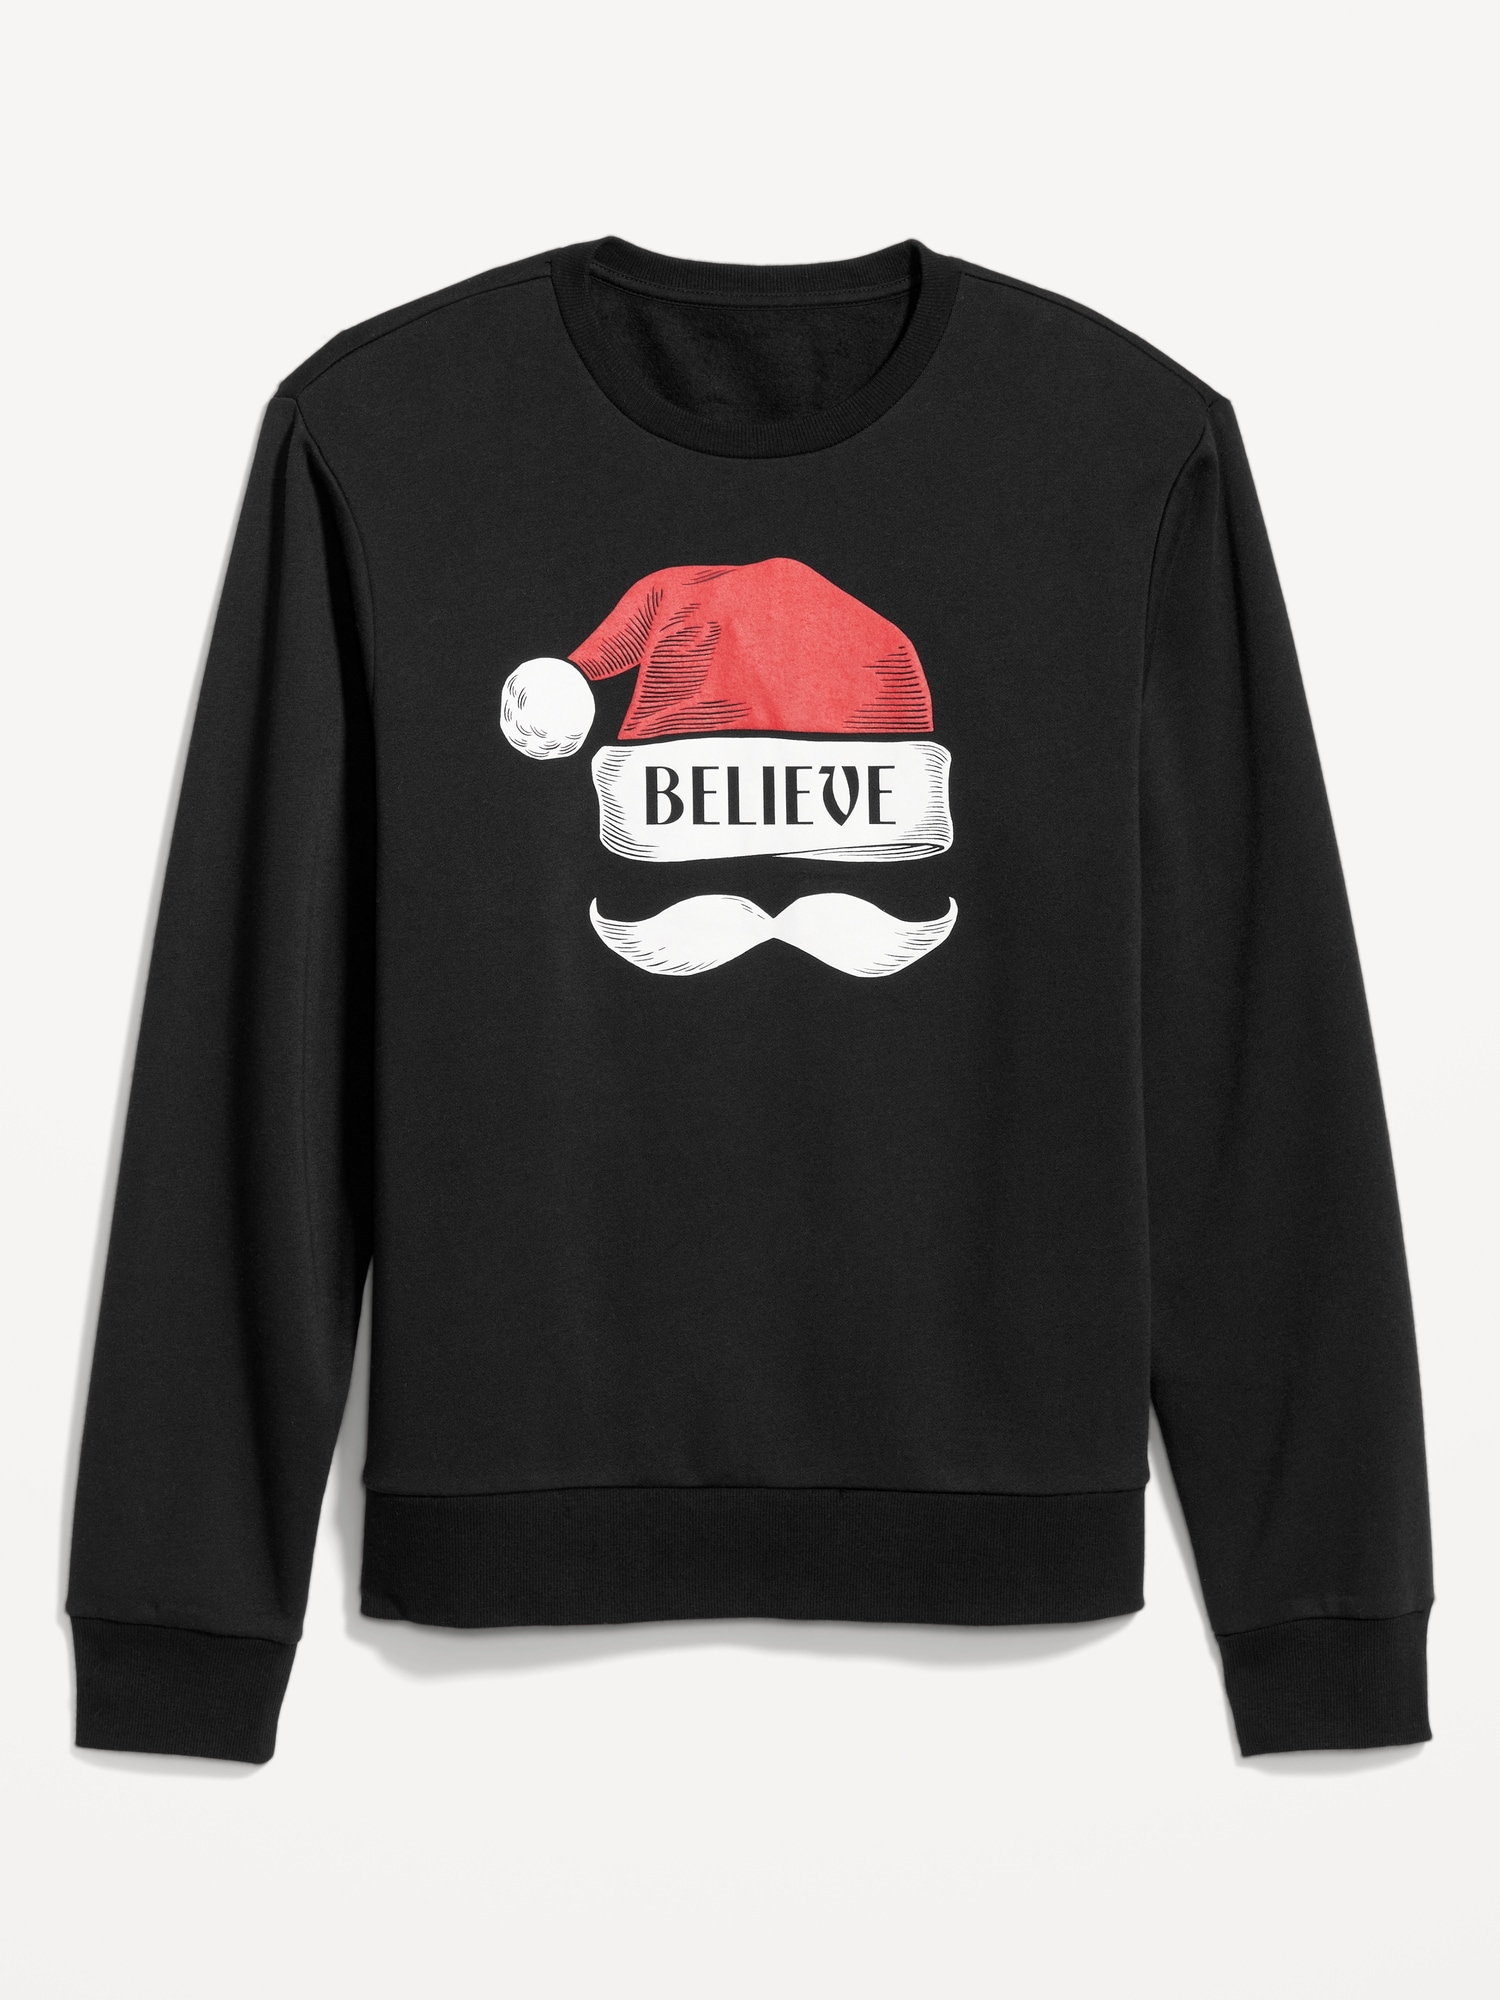 Holiday Graphic Fleece Sweatshirt